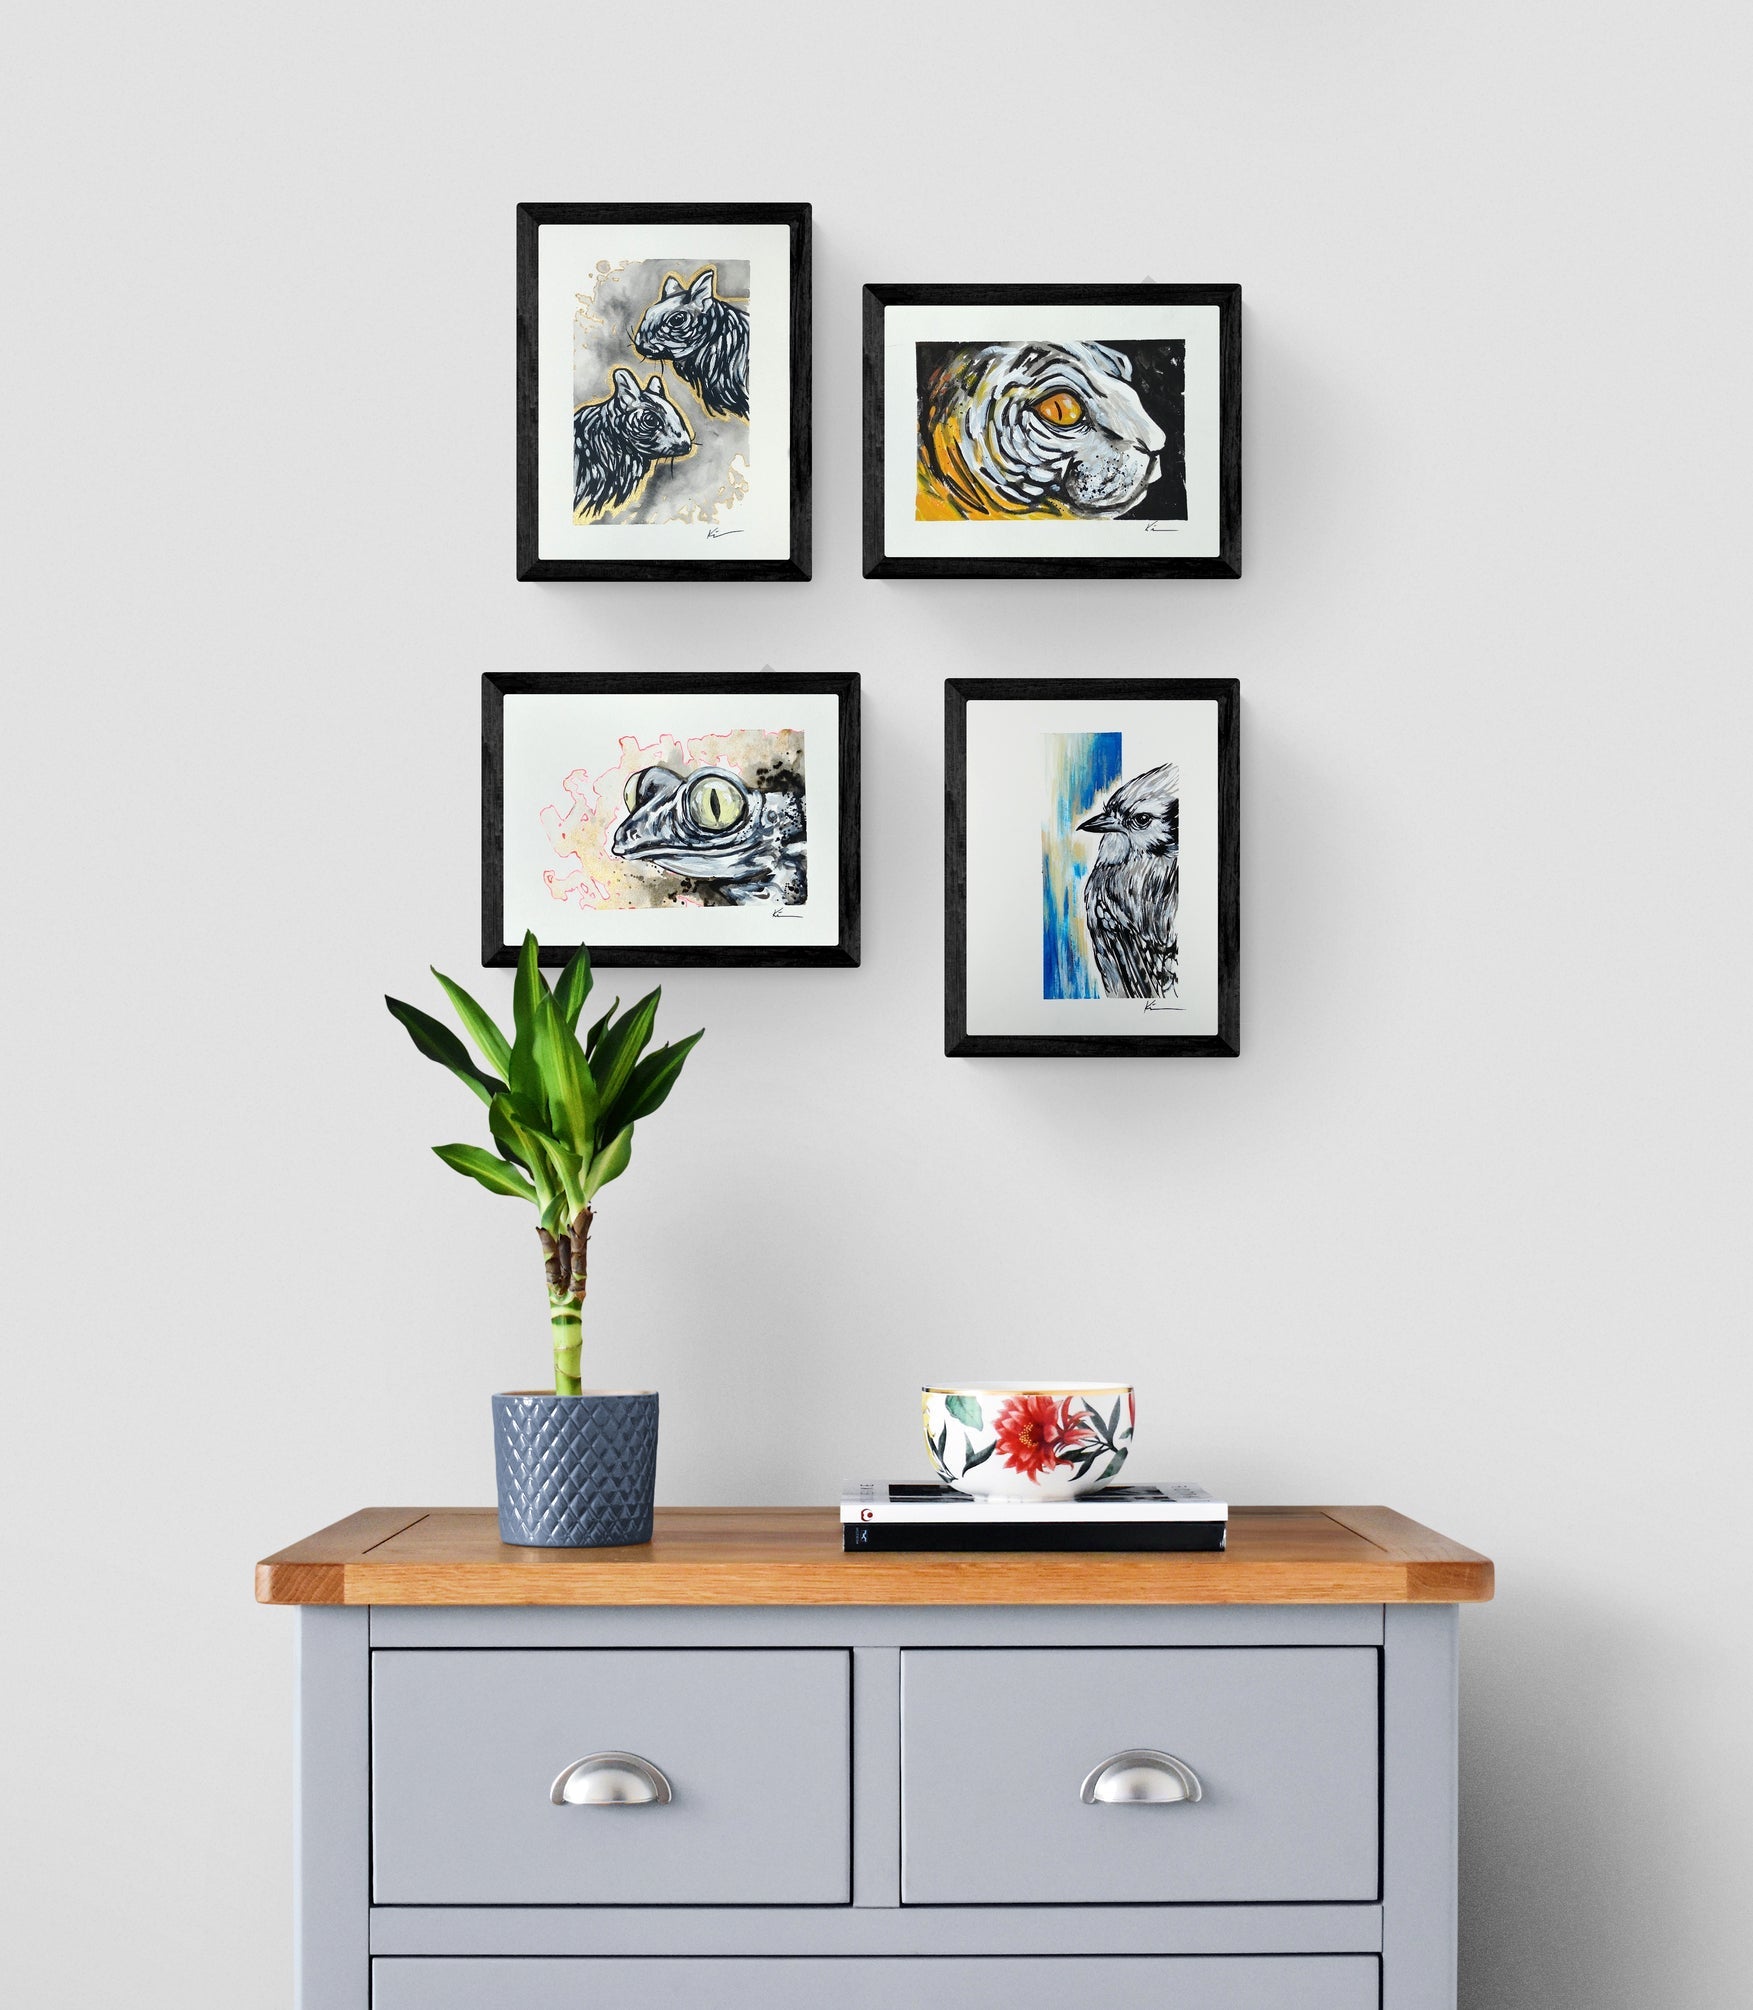 4 oeuvres encadrées représentant des écureils, un chat, une grenouille et un geai bleu accroche au mur au dessus d'une commode grise